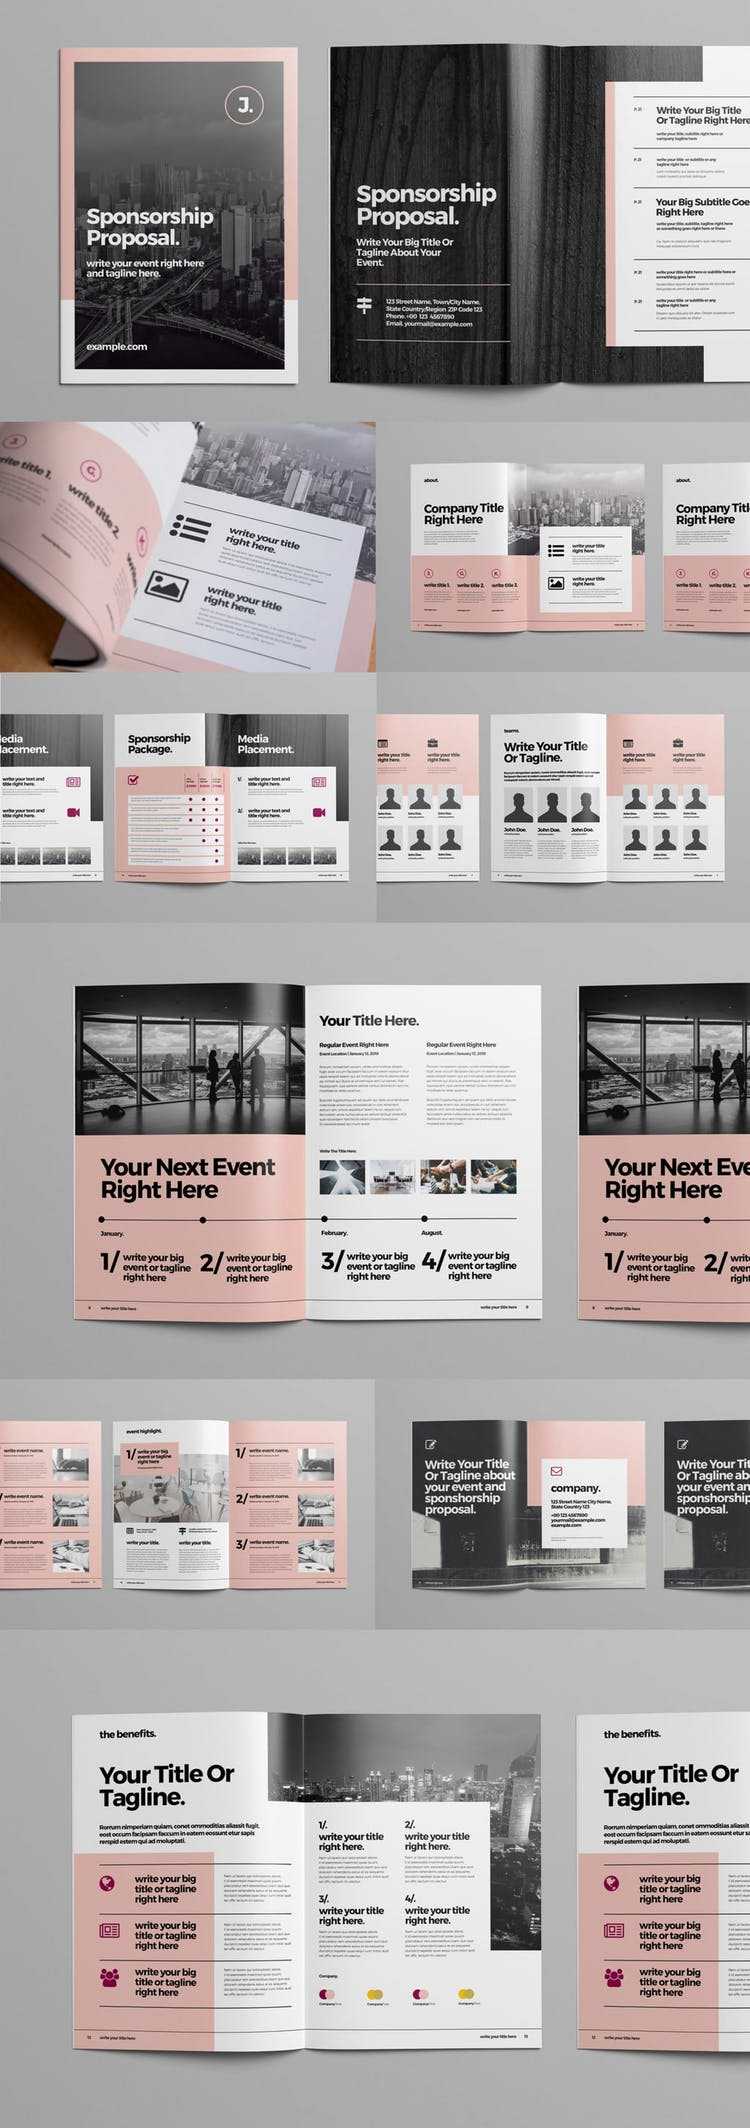 100 Best Indesign Brochure Templates With Regard To Indesign Templates Free Download Brochure